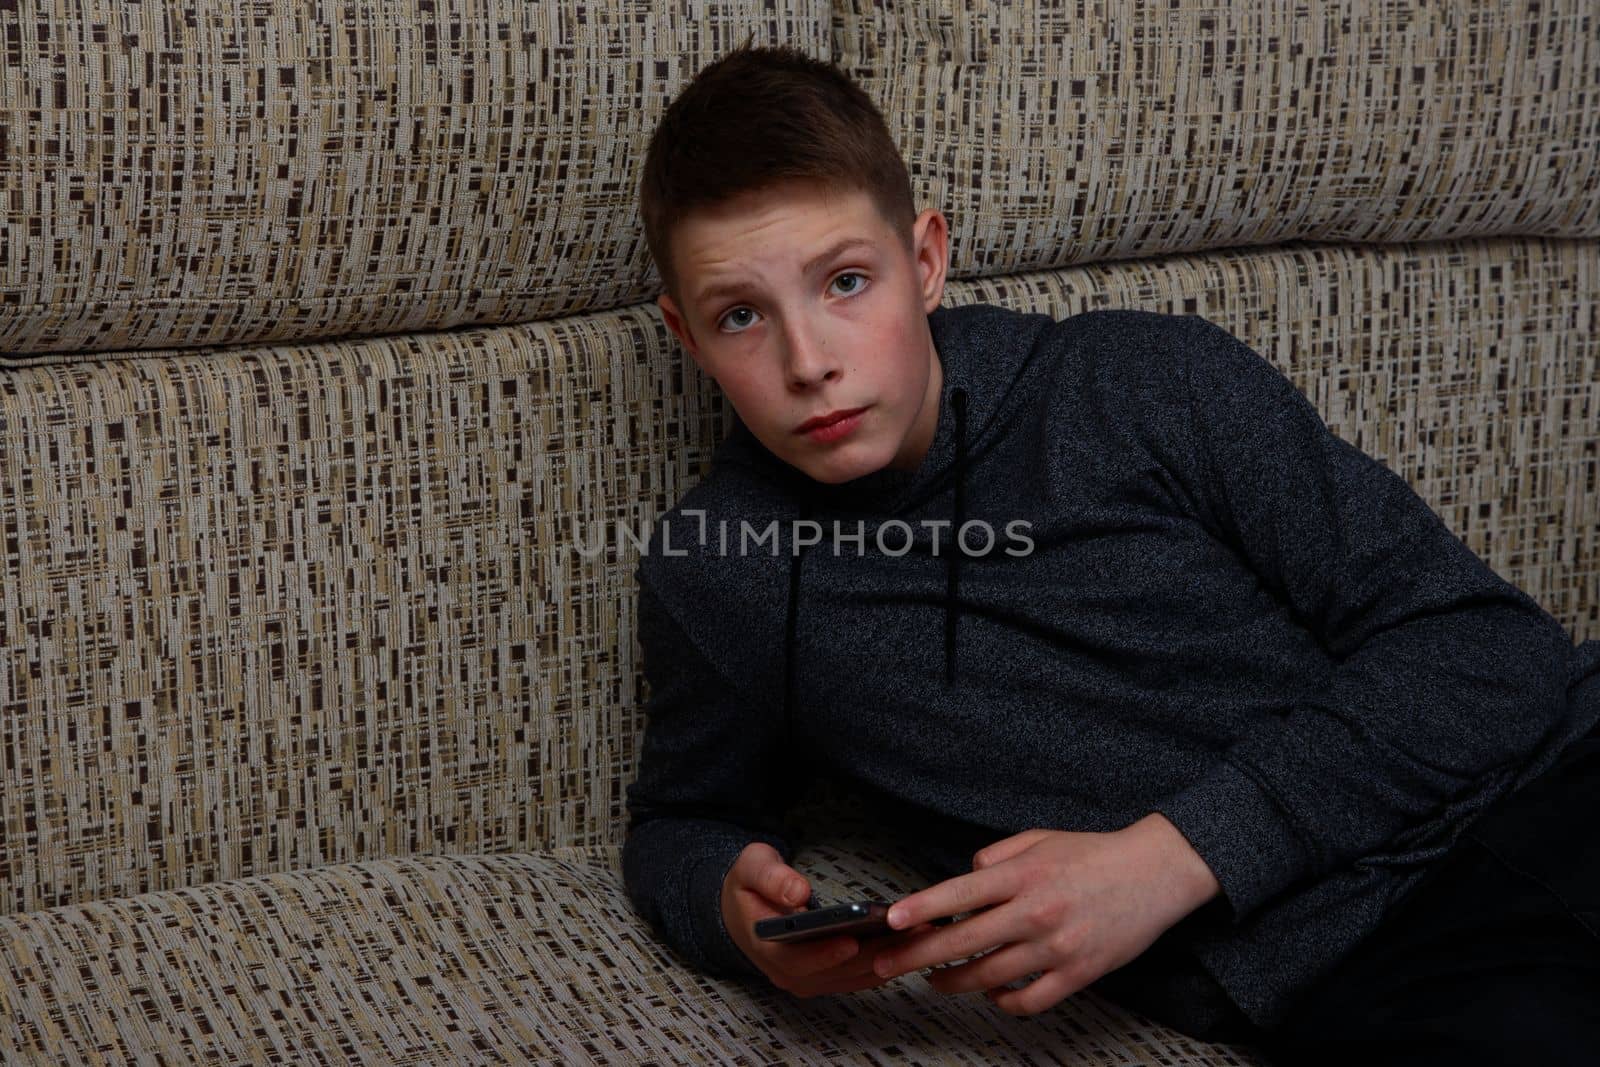 A boy in a grey sweatshirt holding a smartphone. by gelog67